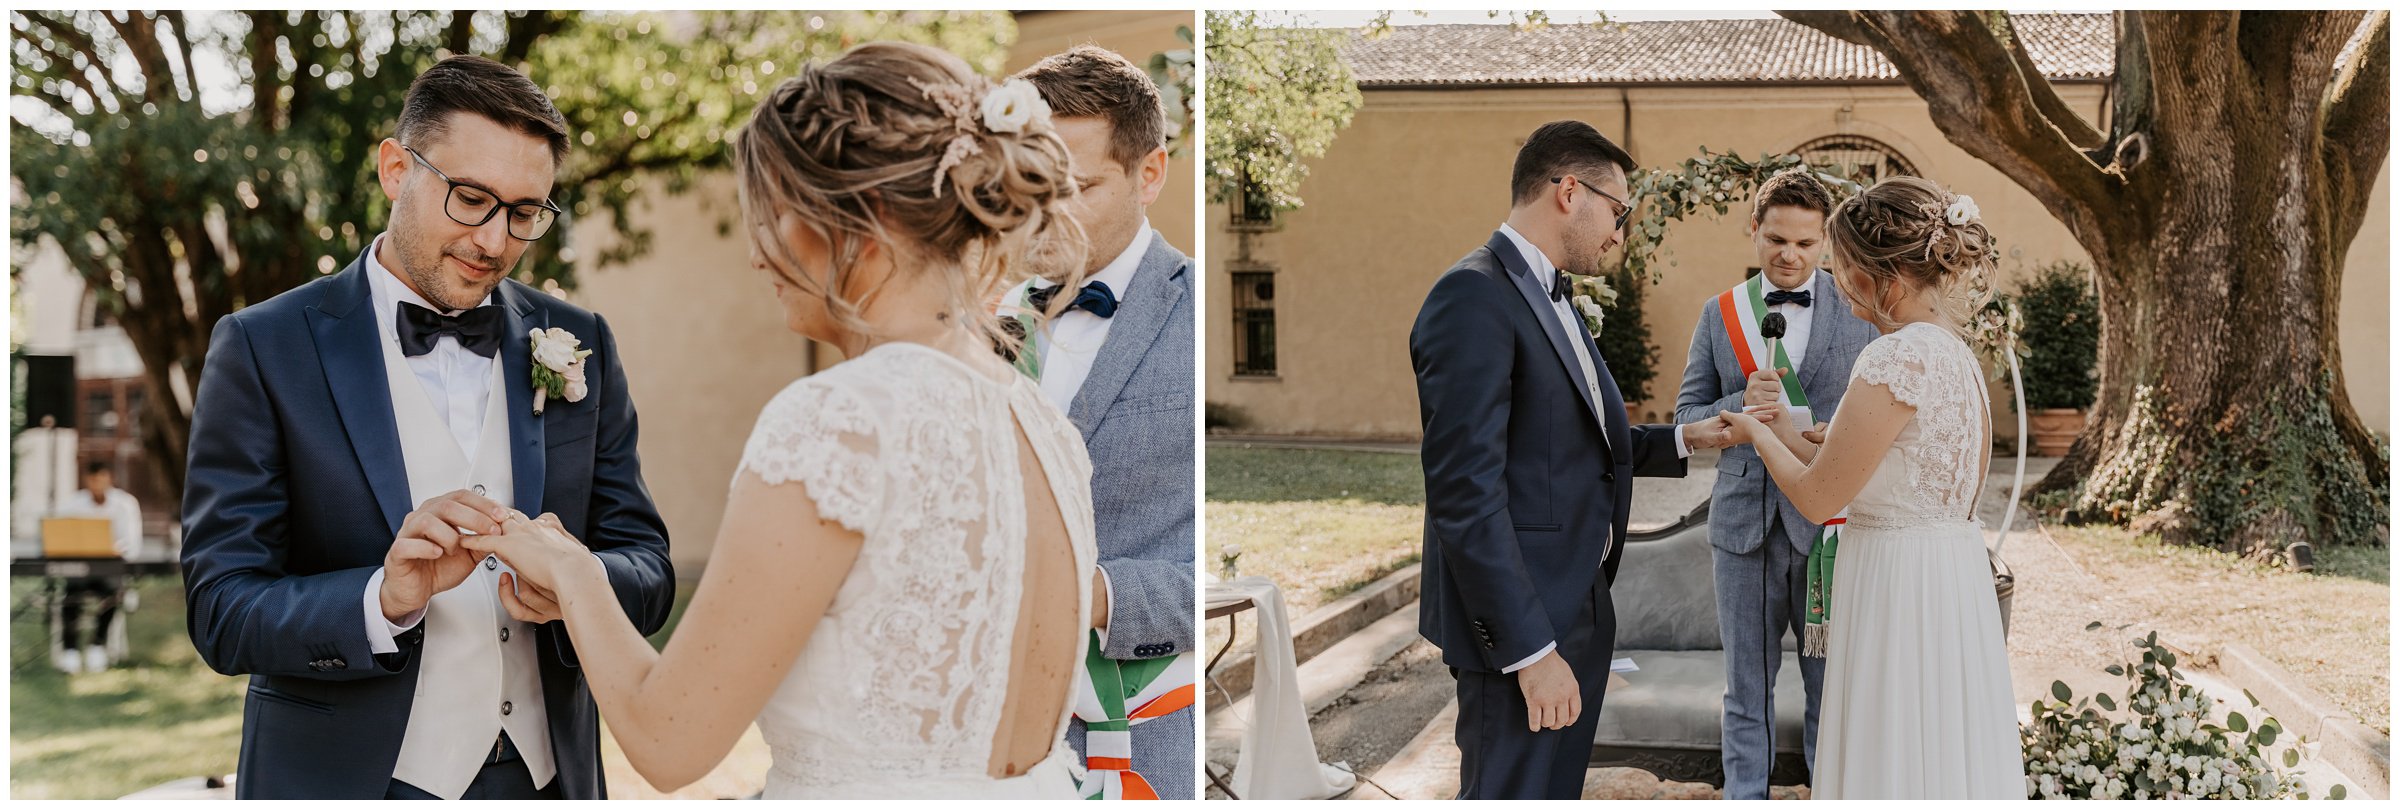 Matrimonio-villa-foscarini-cornaro-fotografo-matrimonio-treviso-fotografo-matrimonio-venezia-30.jpg